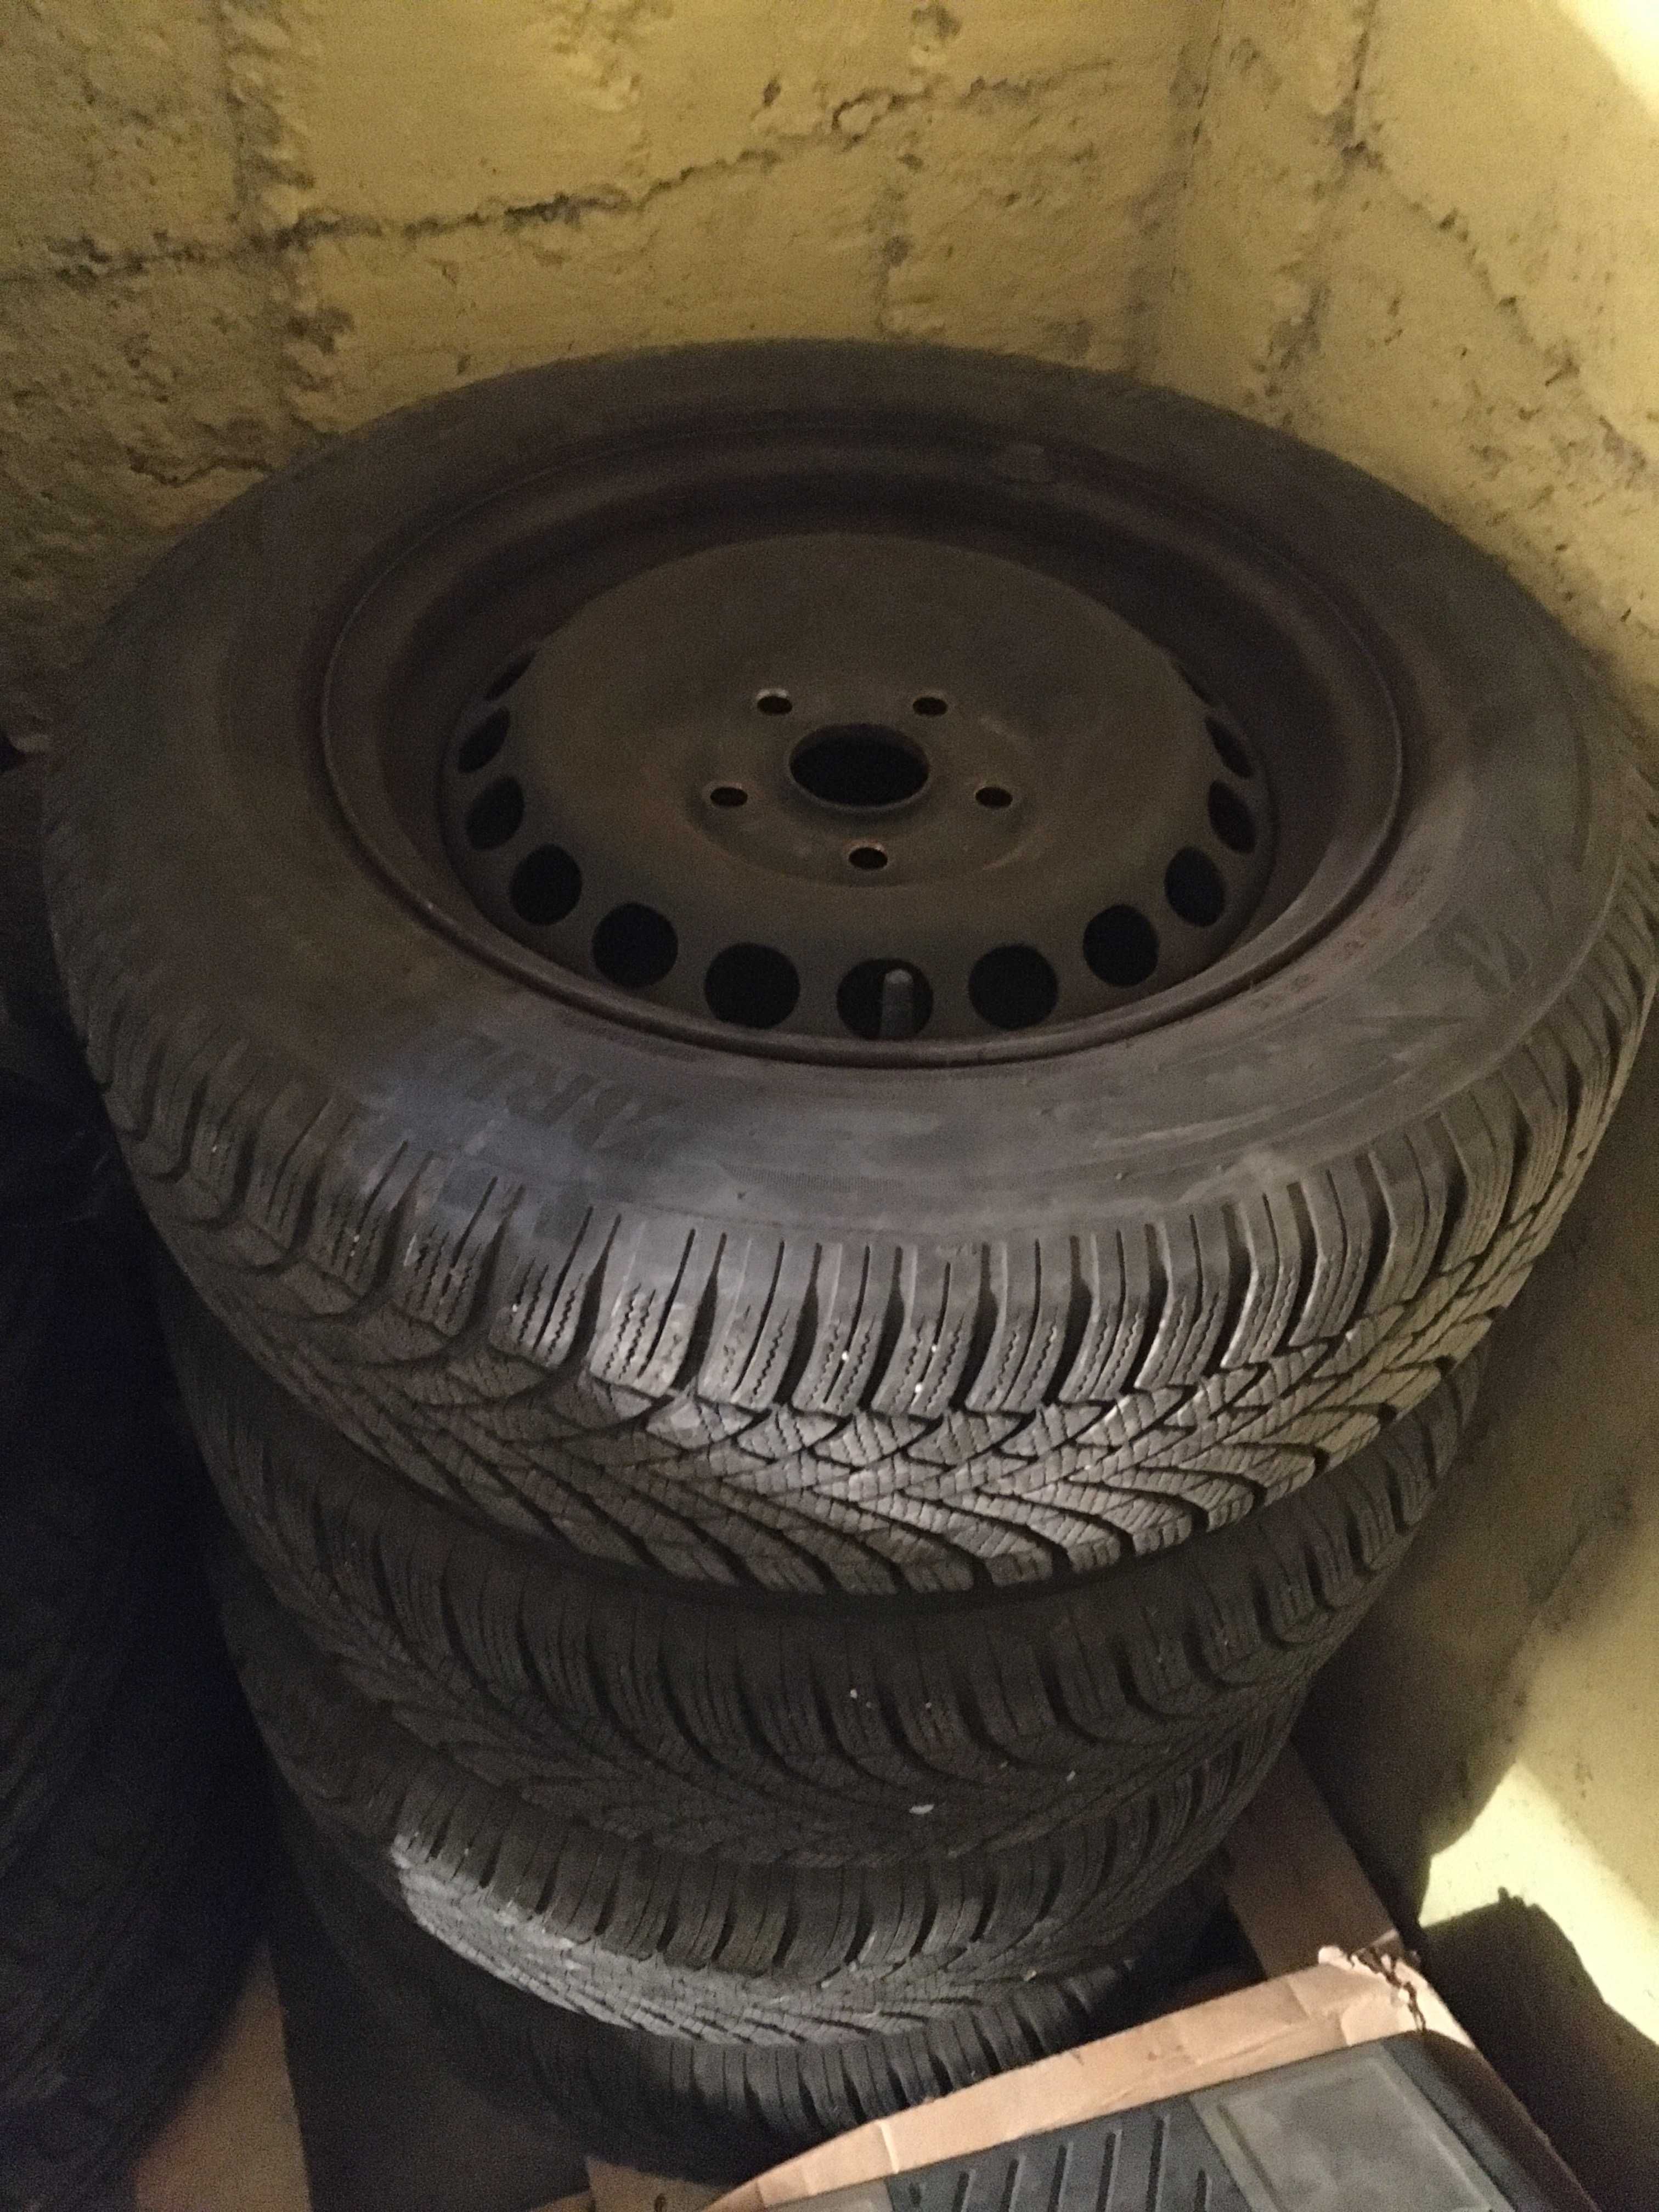 4 зимни гуми с метални джанти Bridgestone Blizzak 195/65 R15 DOT 2819